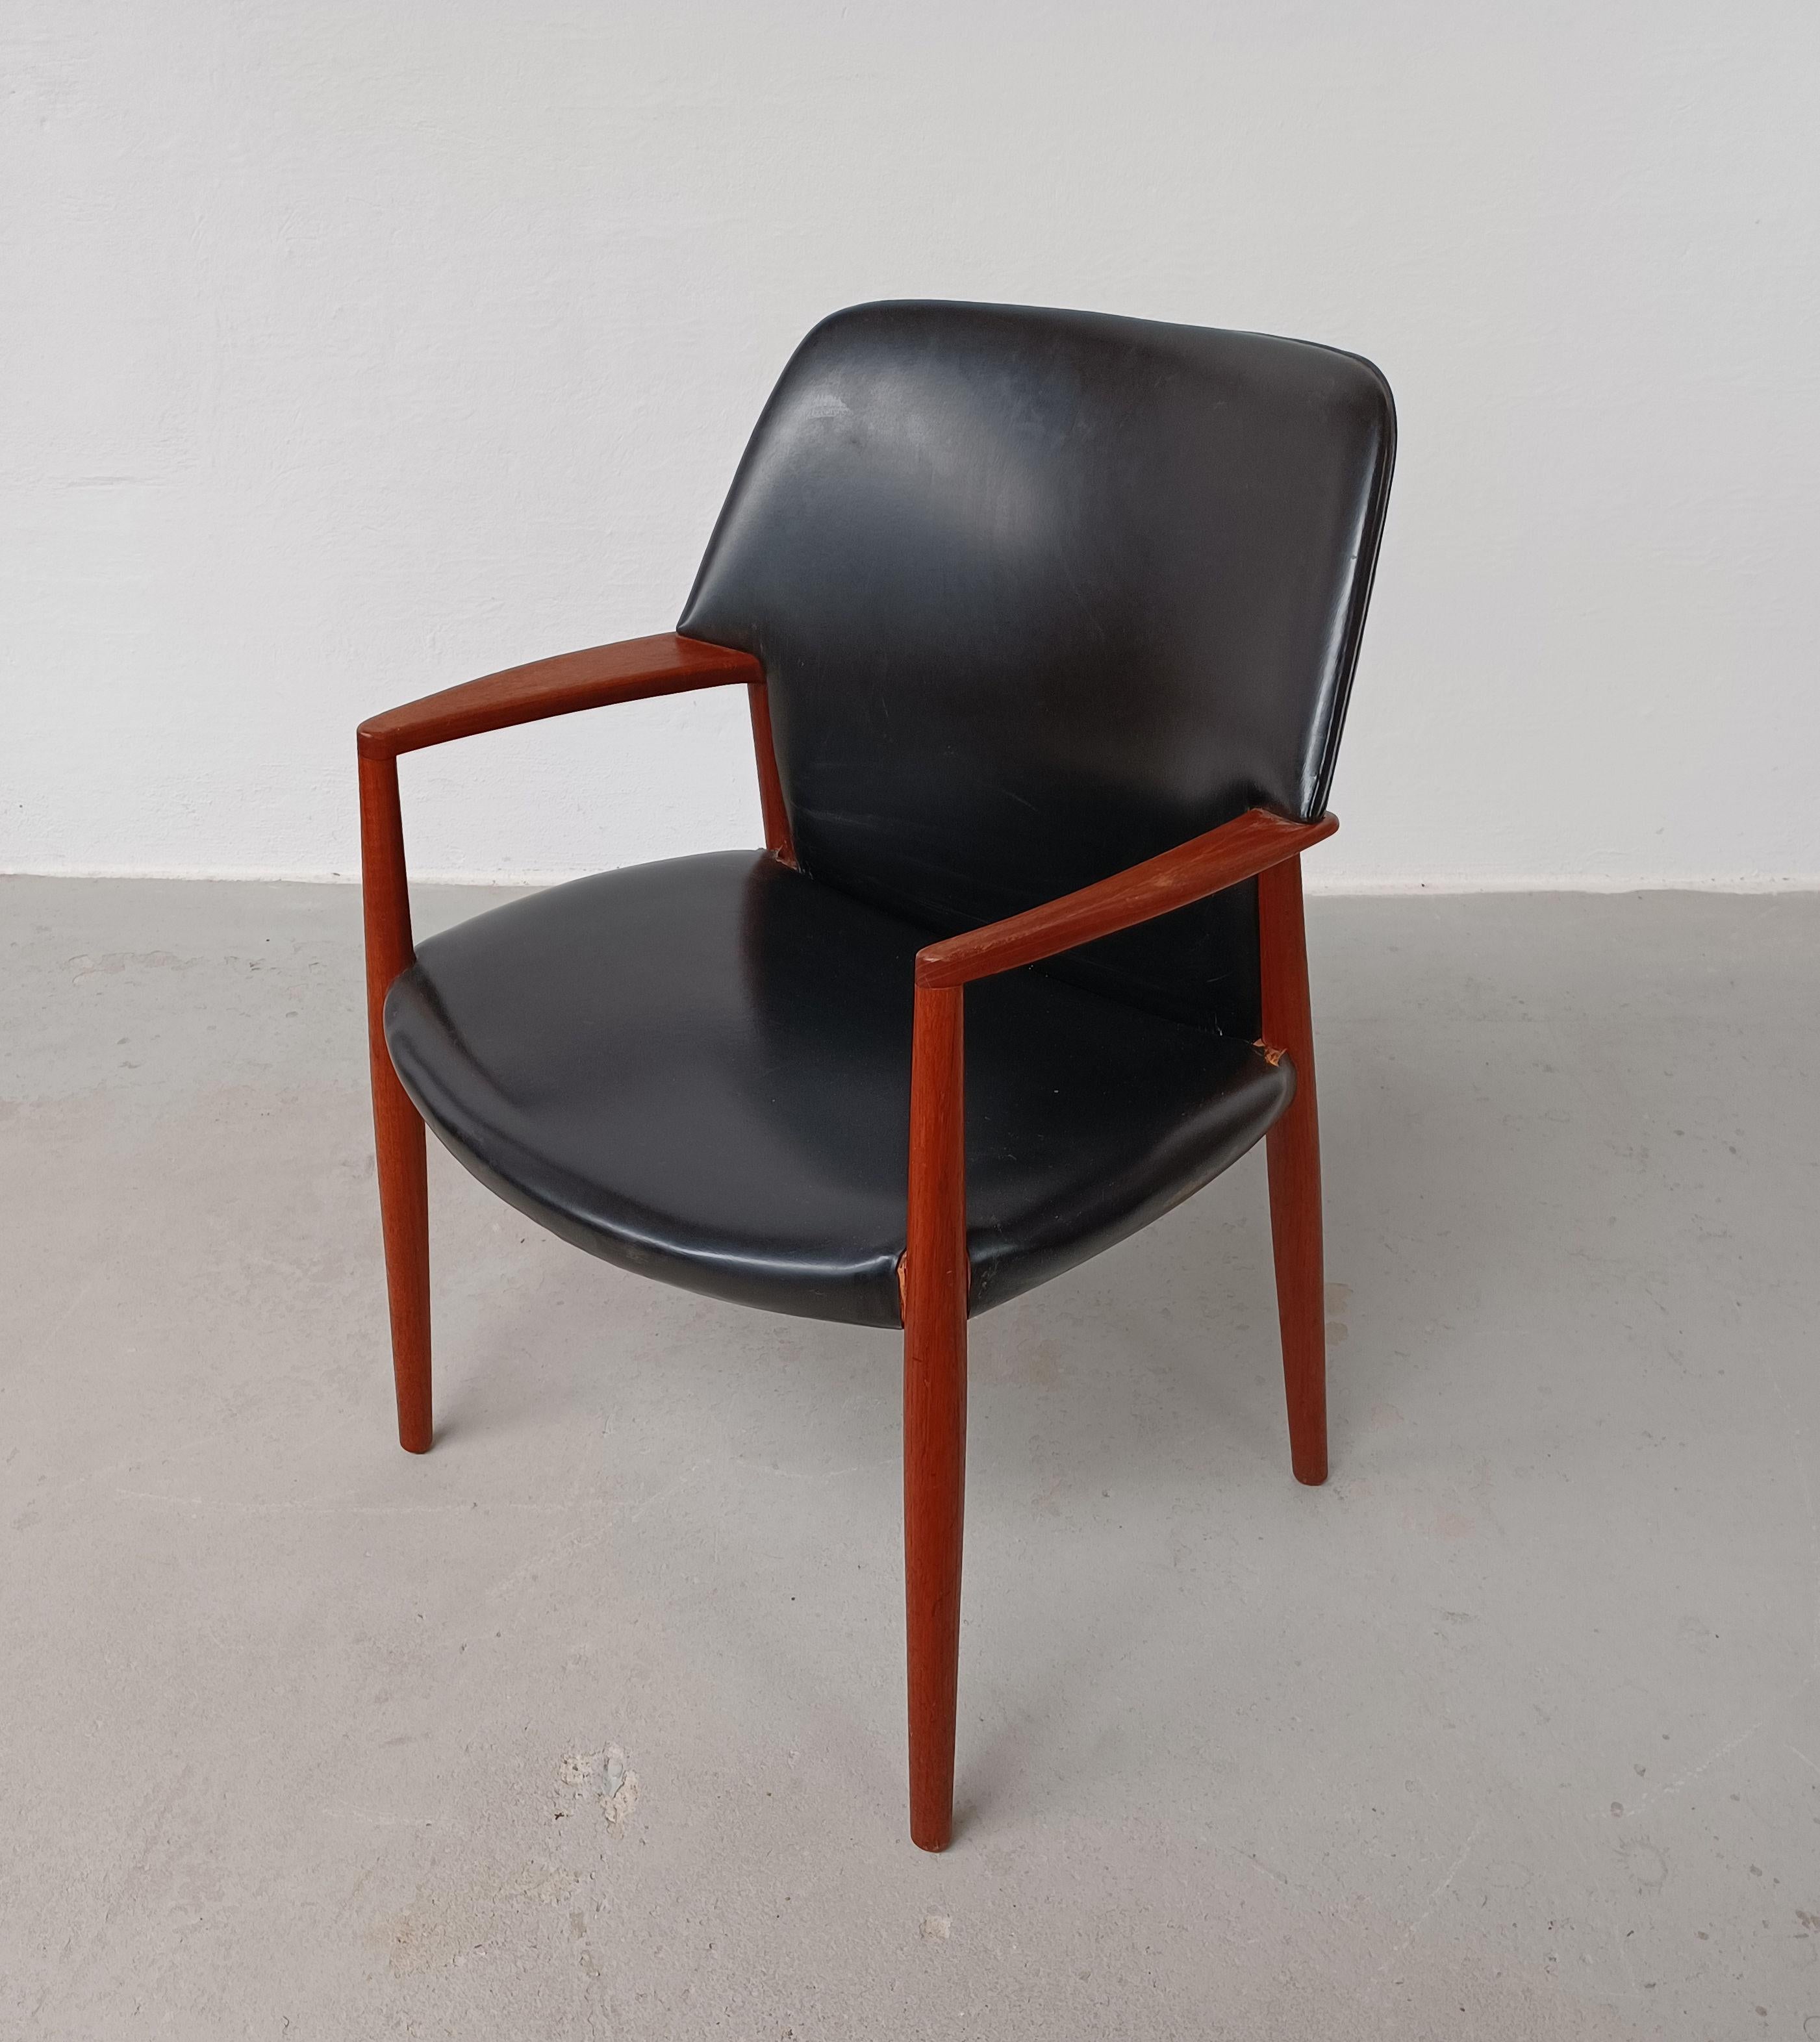 Danish 1950s Ejnar Larsen, Aksel Bender Madsen Fully Restored Reupholstered Armchair  For Sale